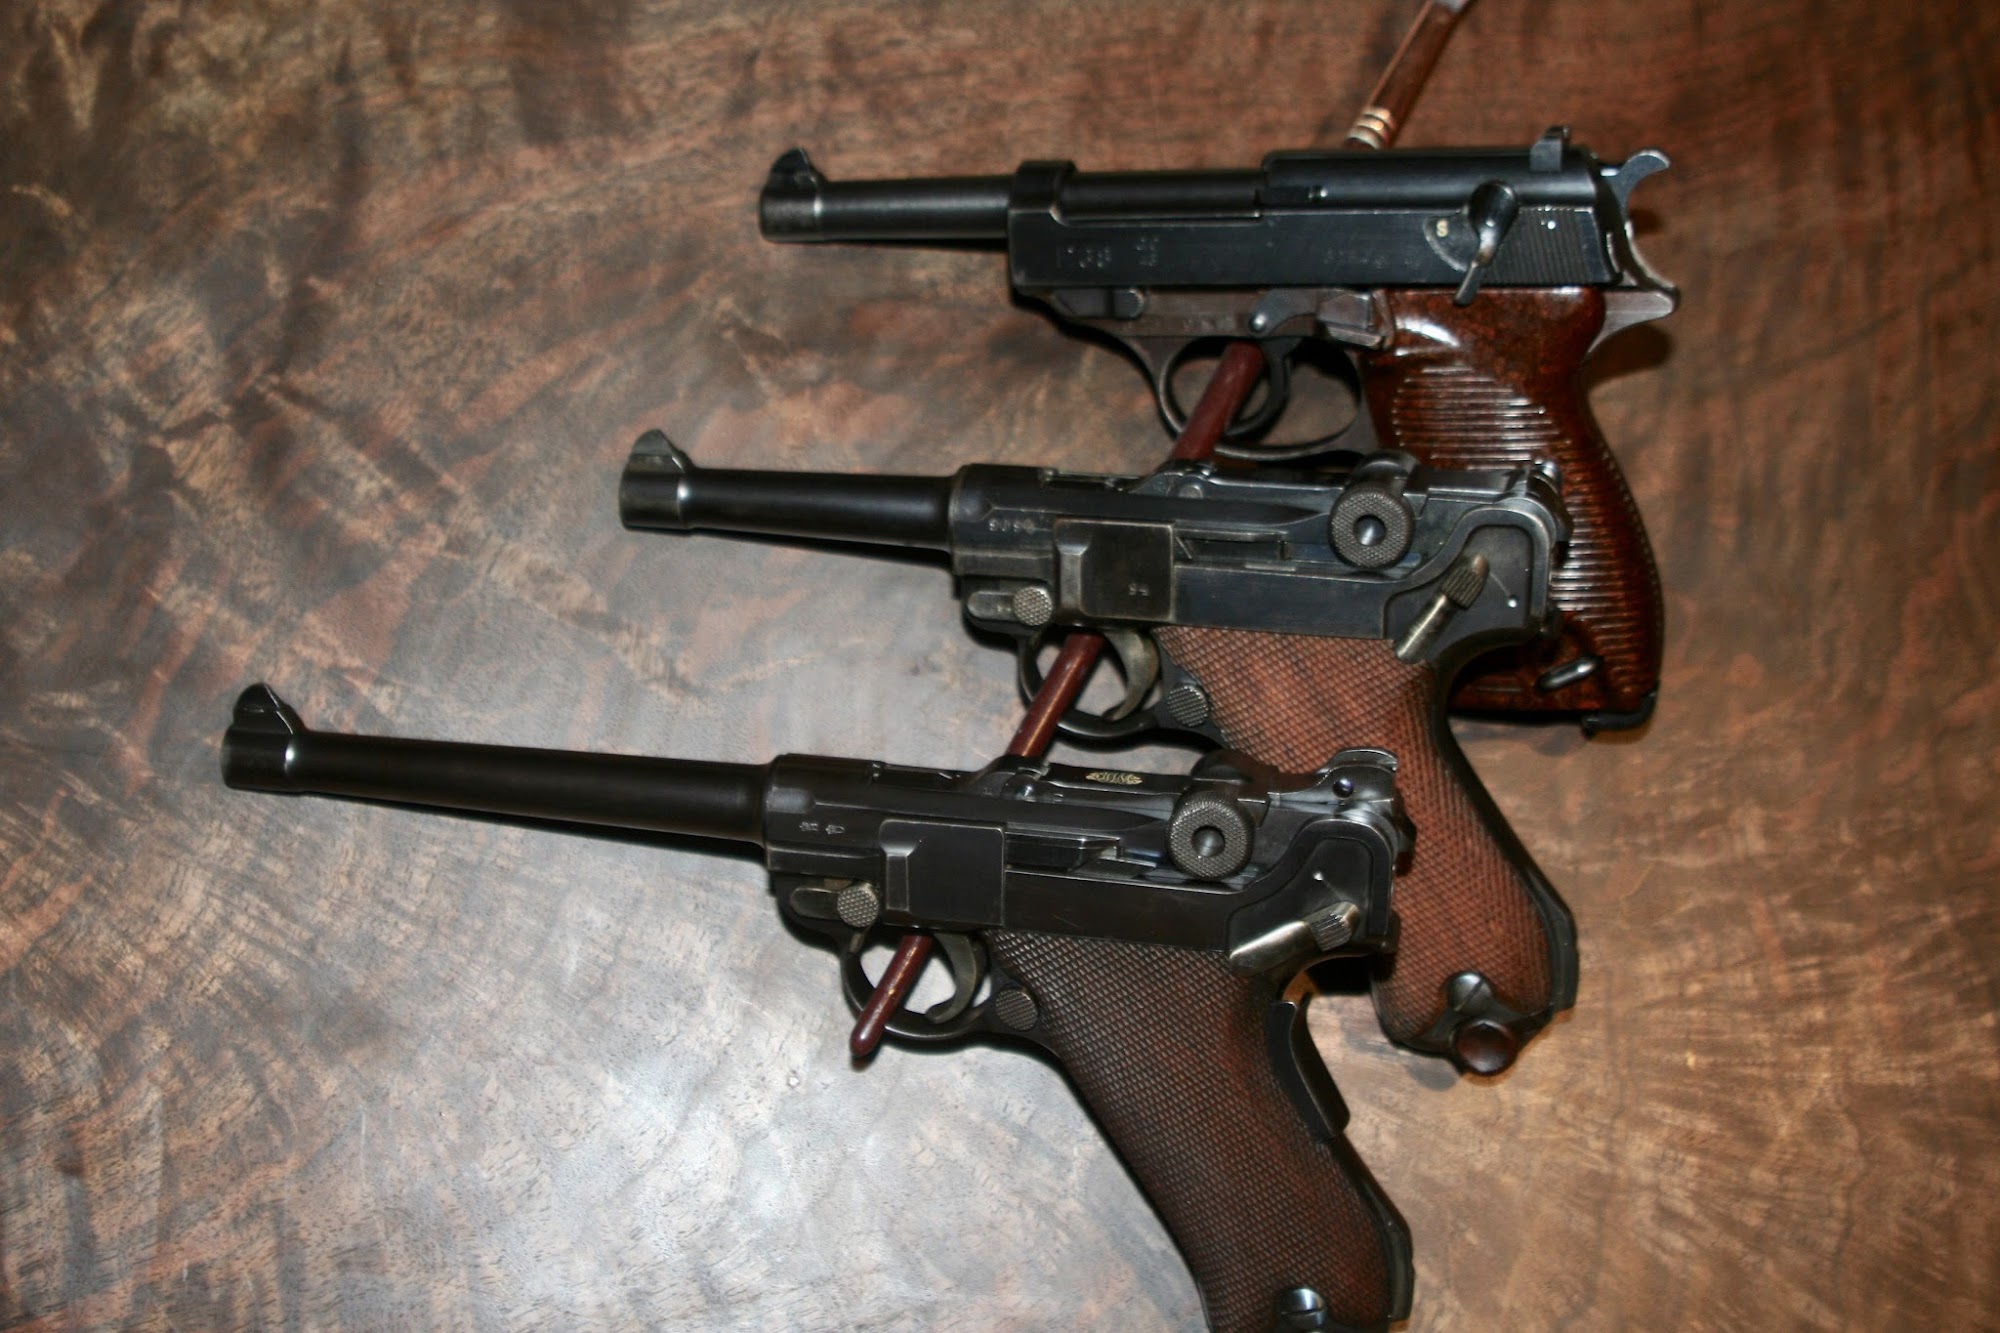 Goat Mountain Arms & Ammo